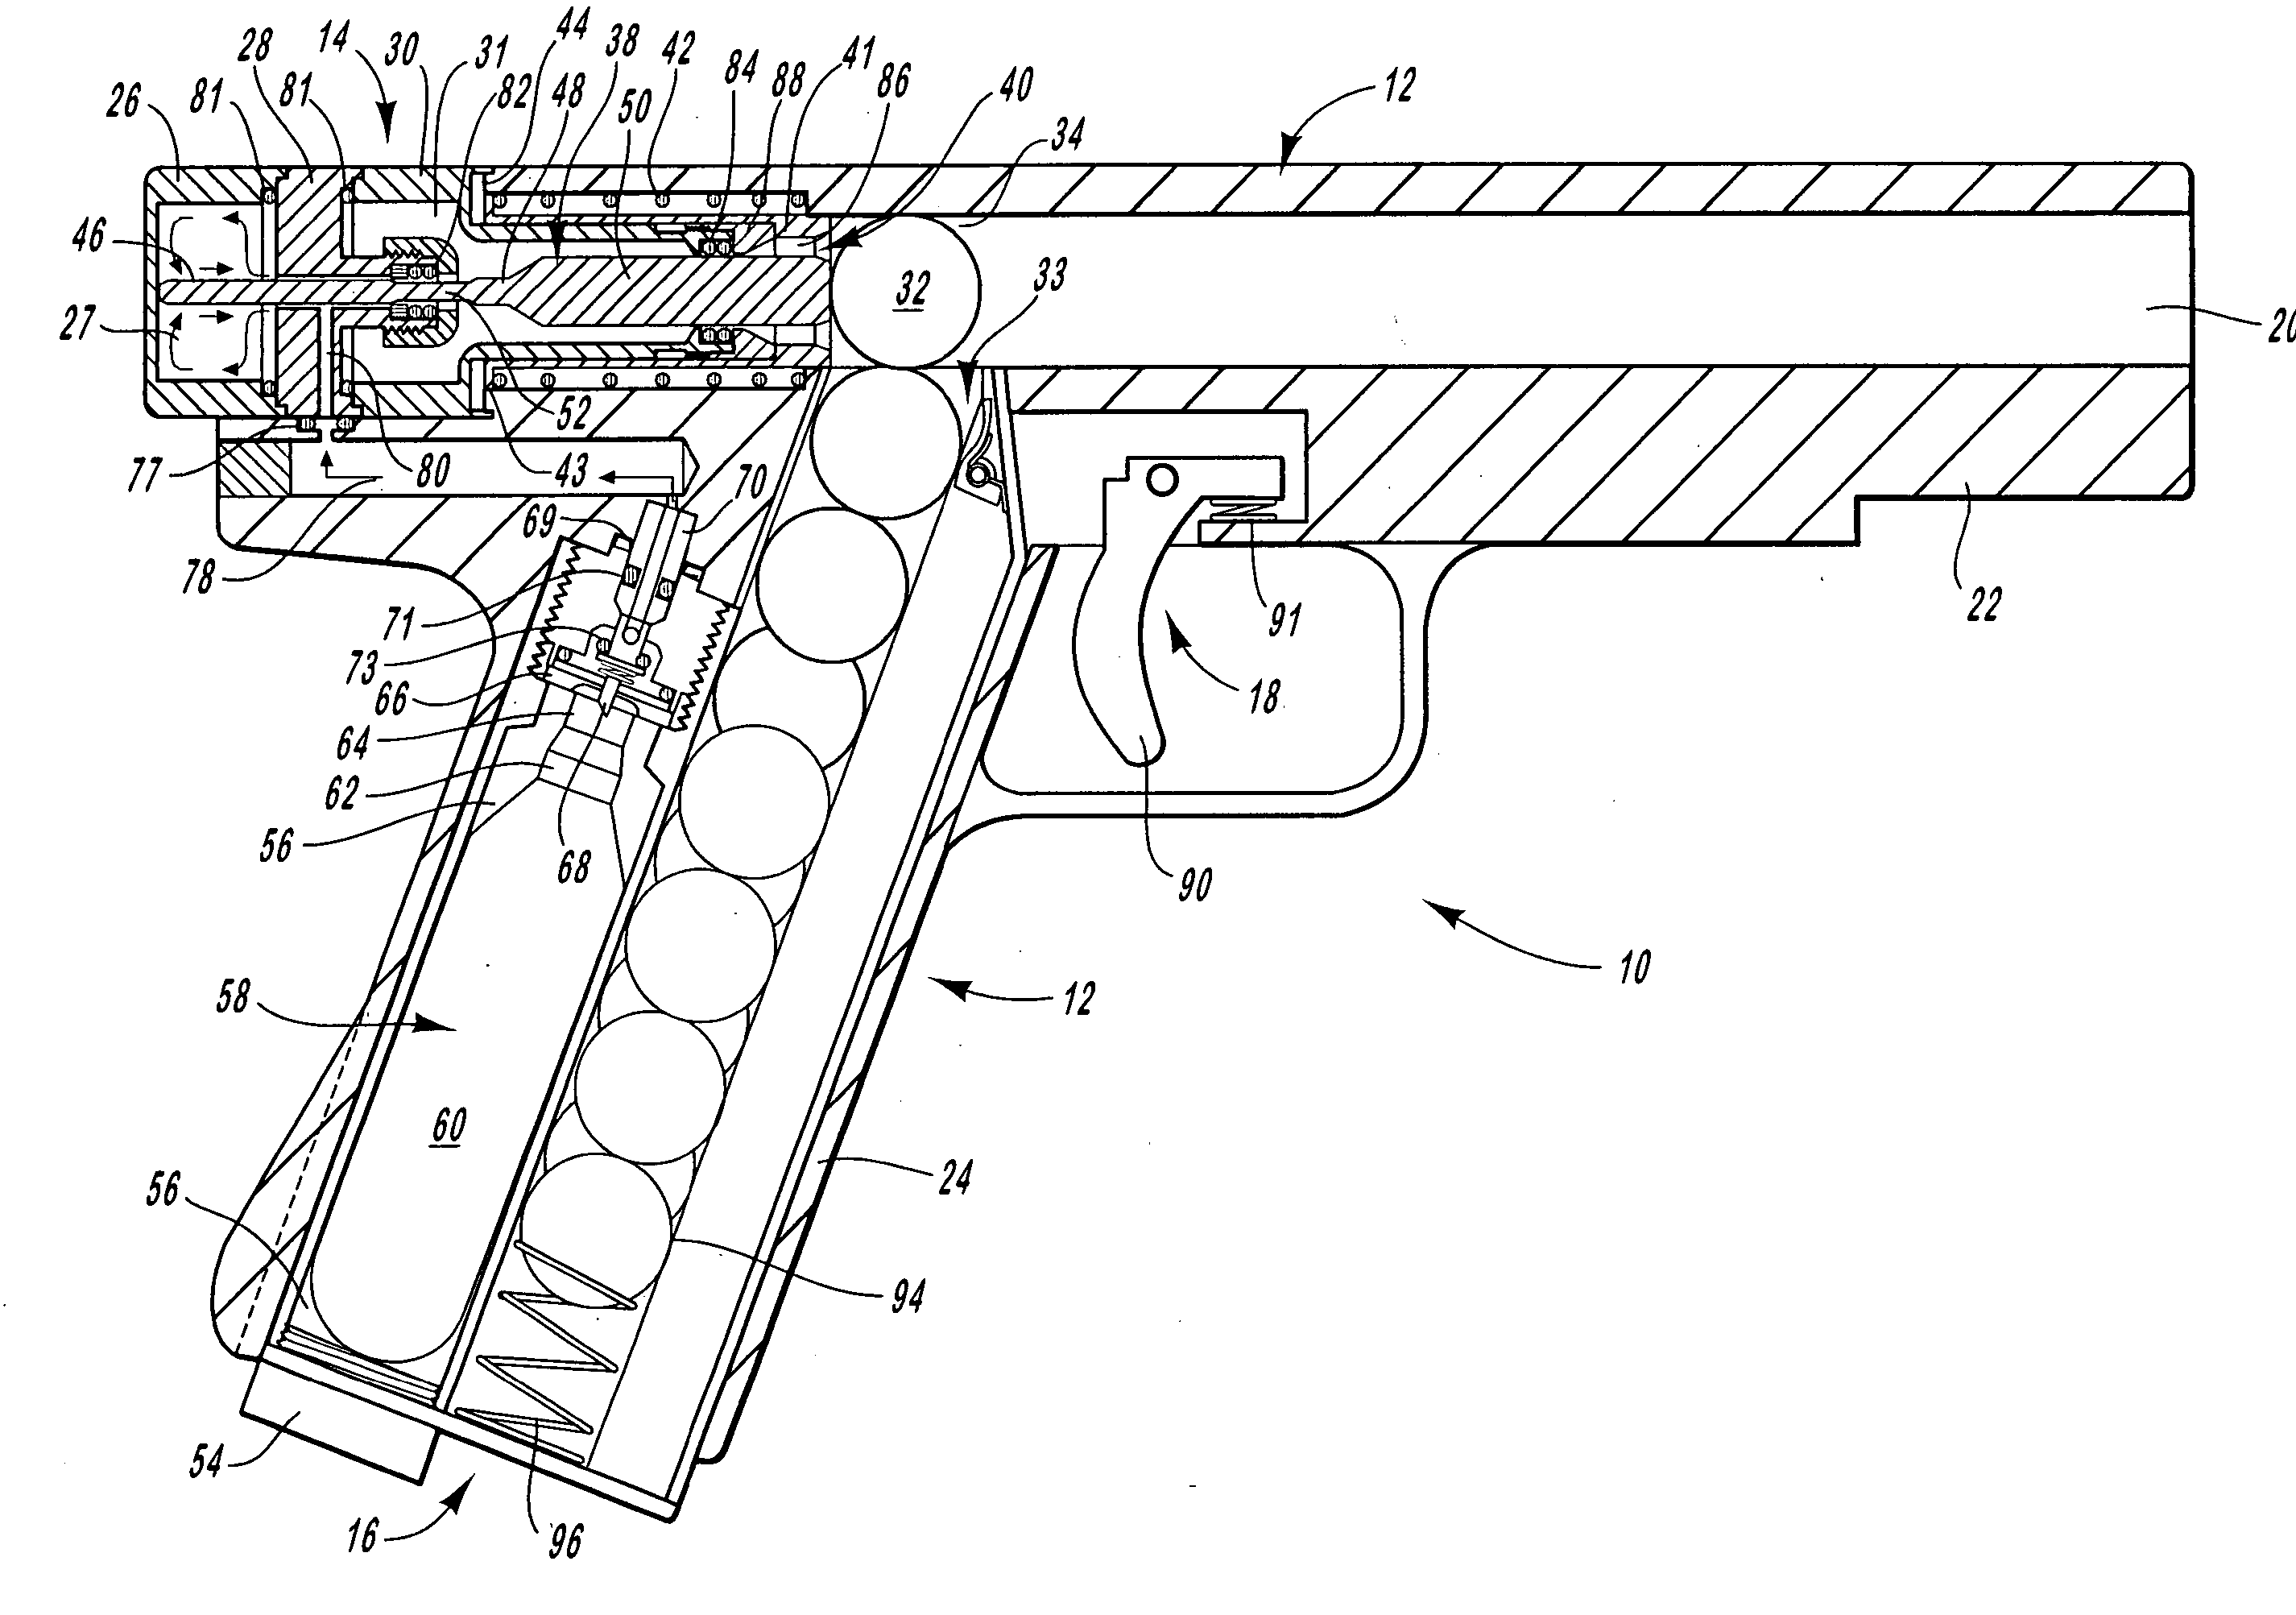 Semi-automatic-firing, compressed-gas gun